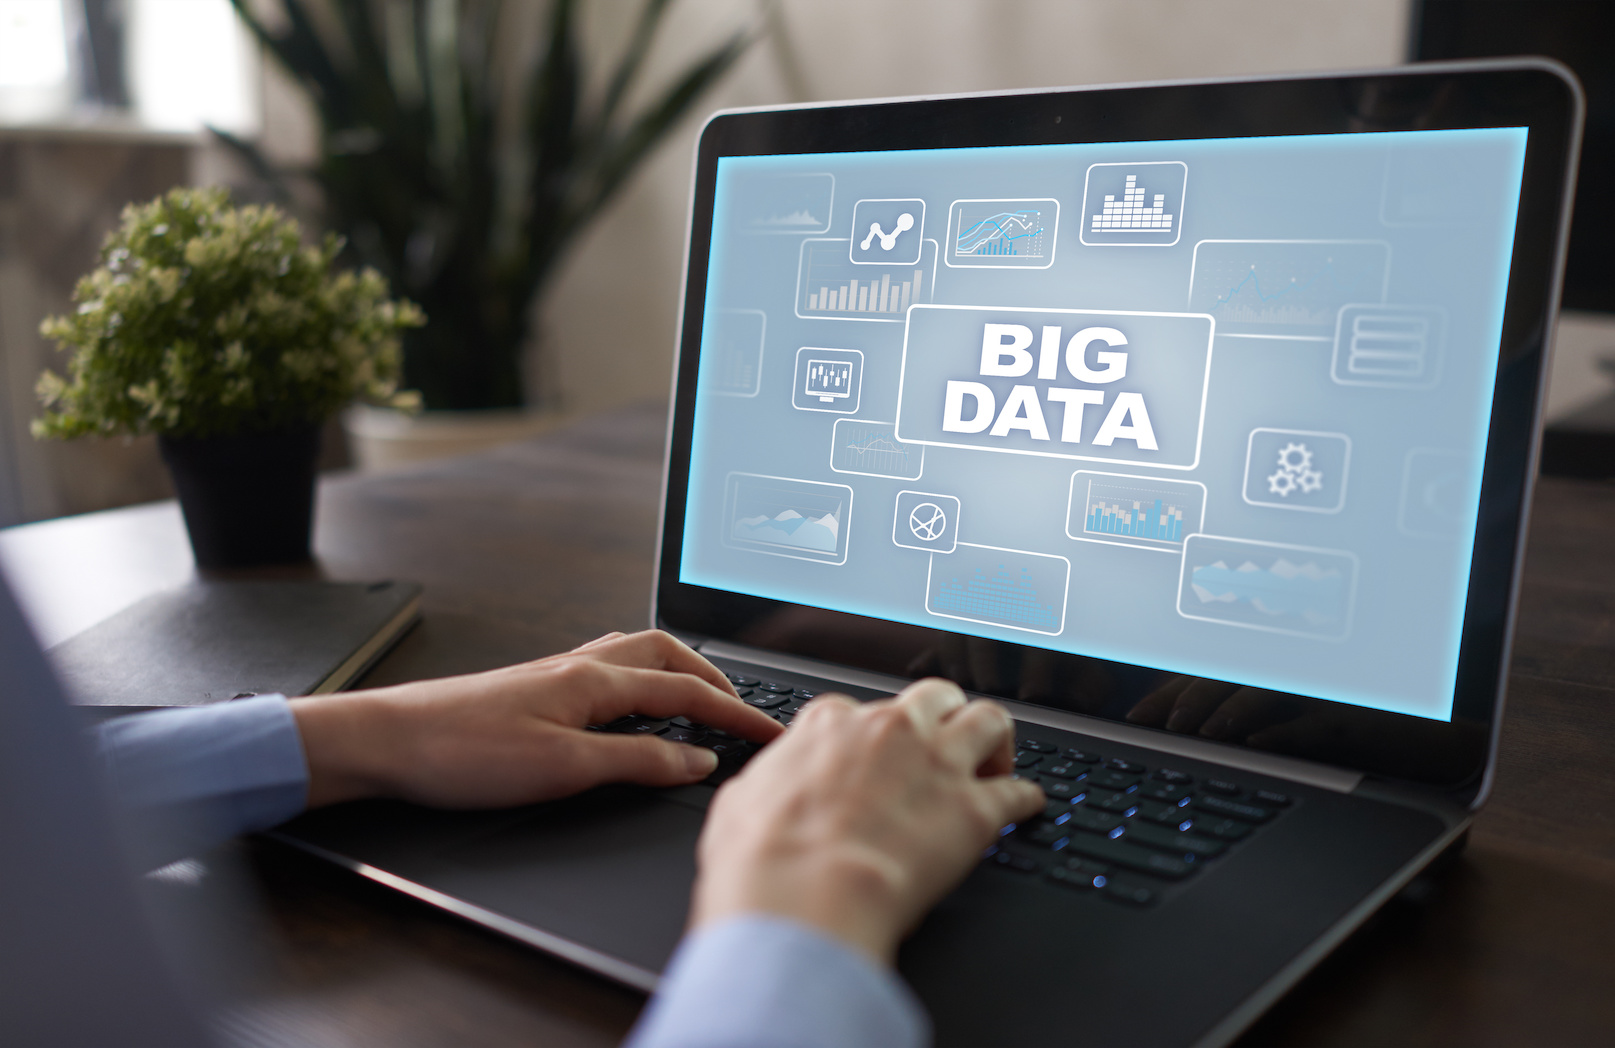 Cloud & Big Data Project Management Image